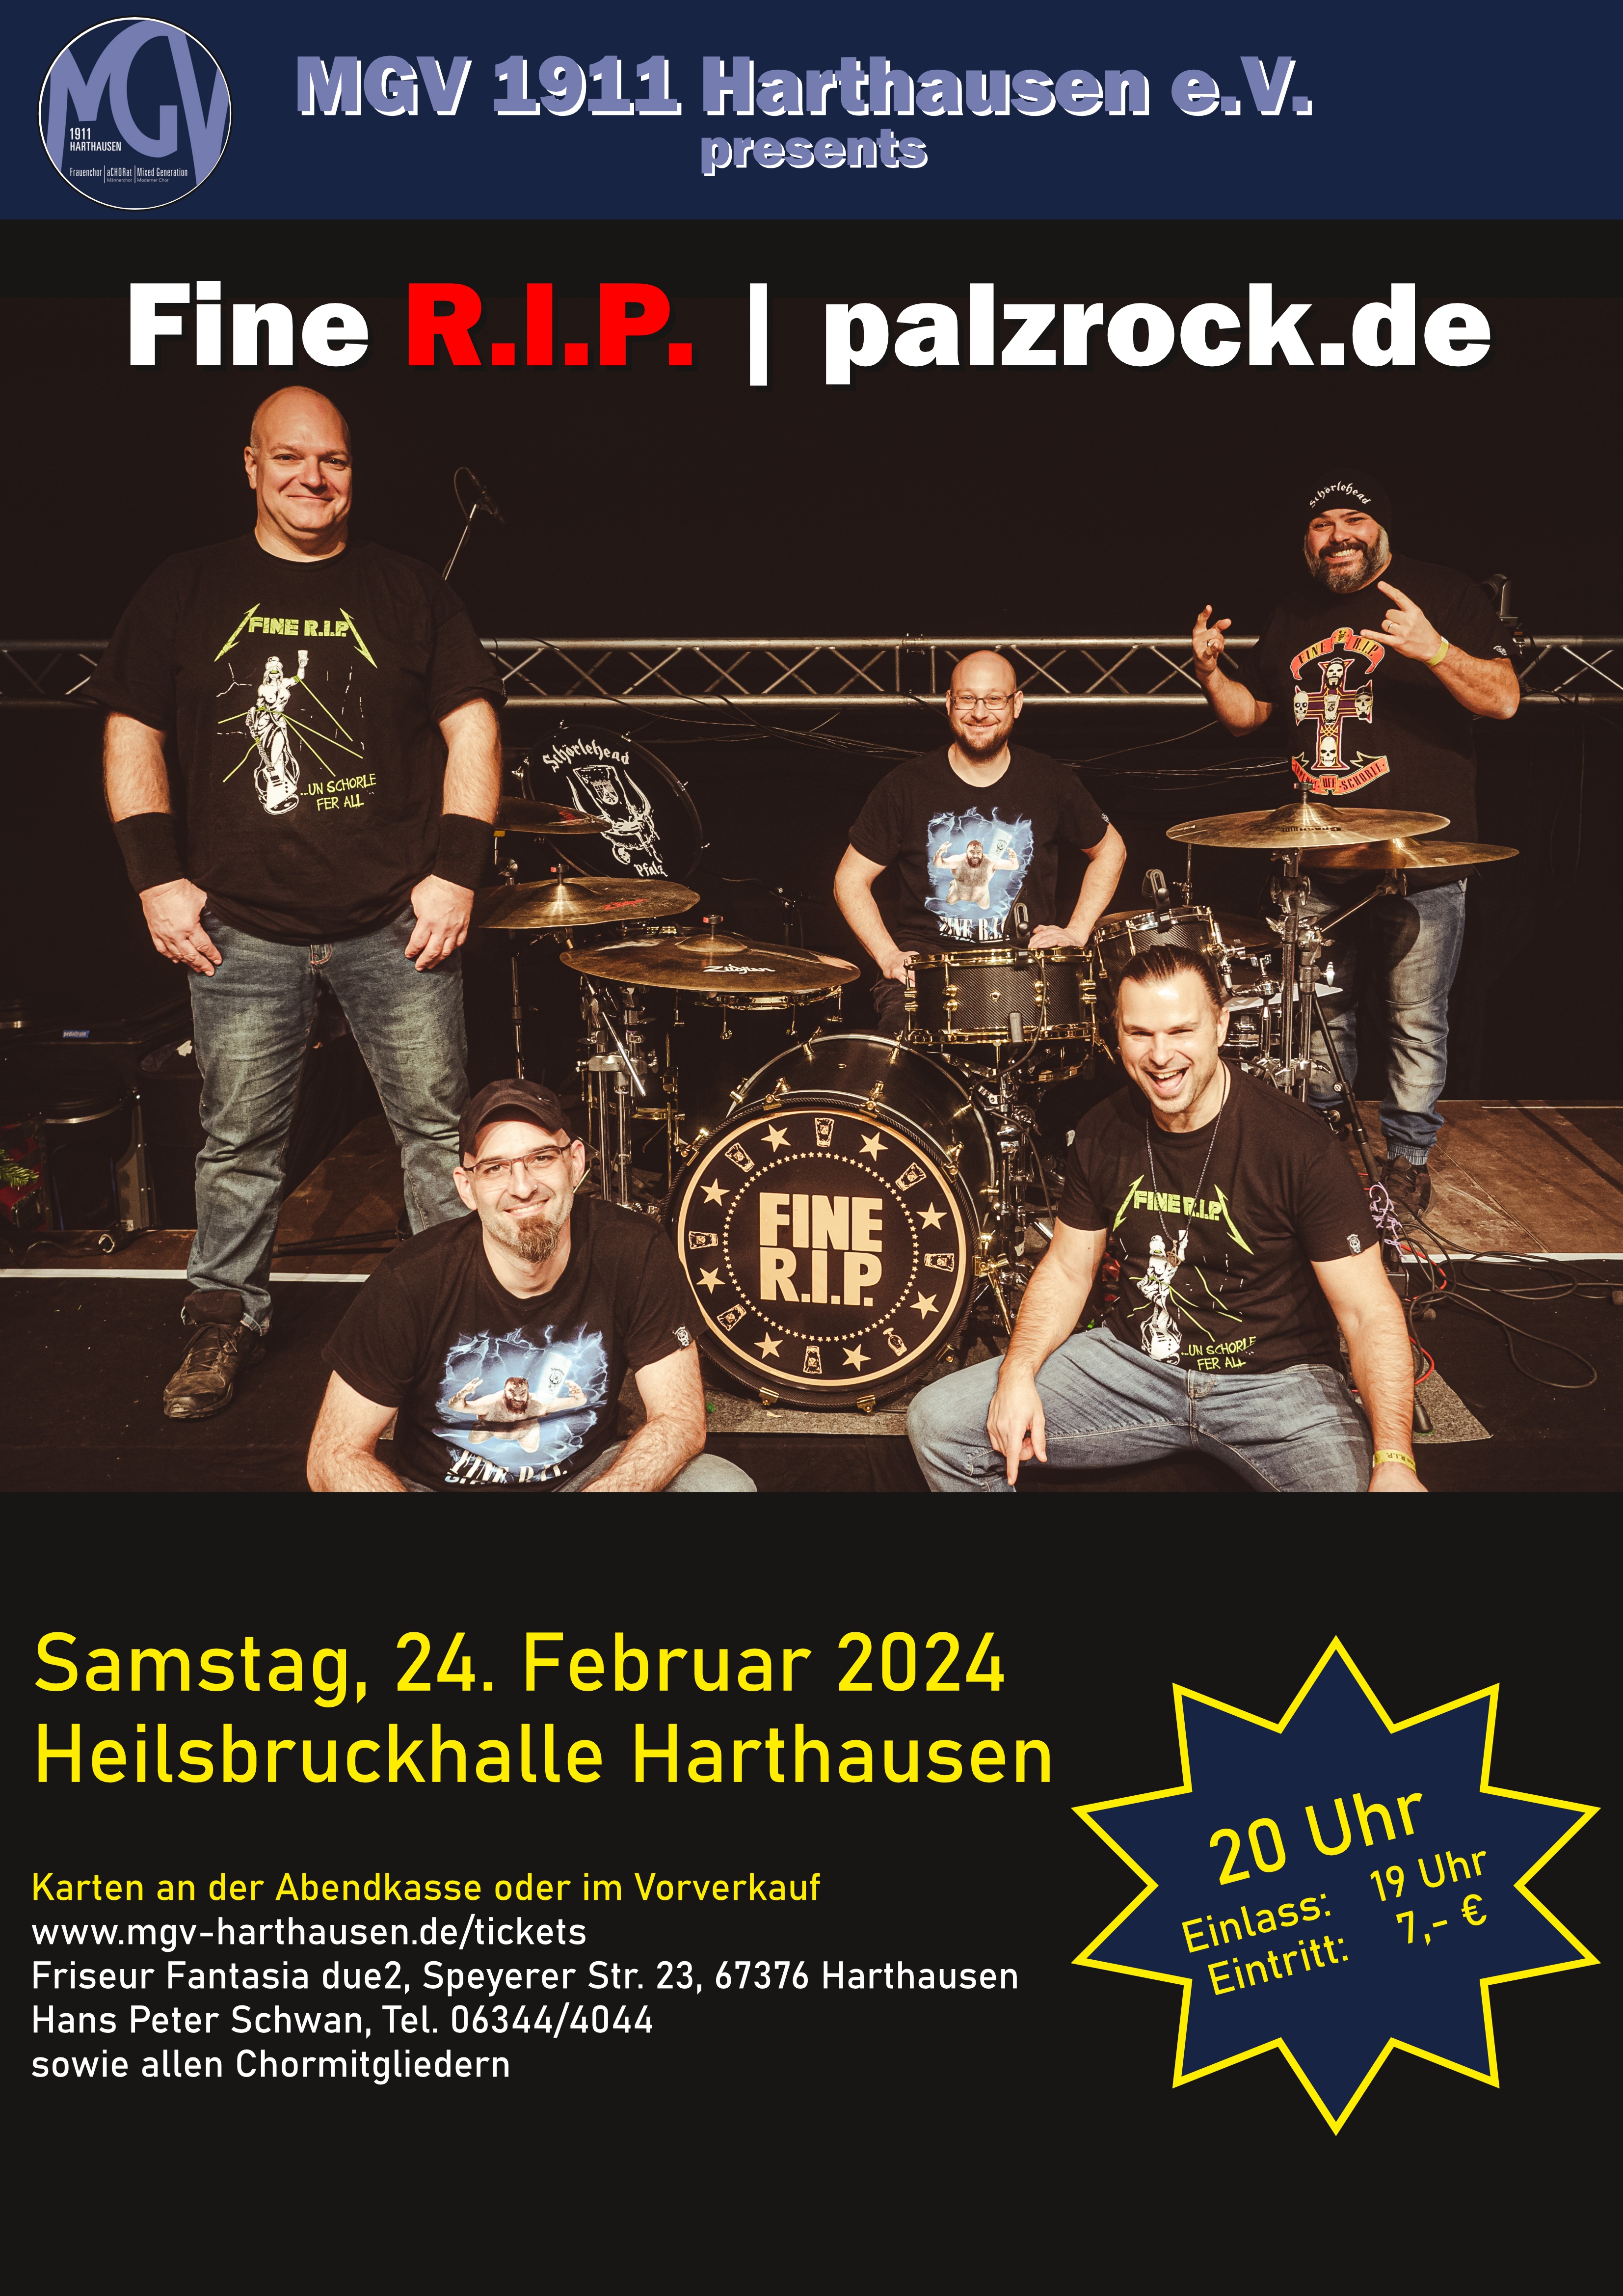 Plakat: Fine R.I.P.-Konzert in der Heilsbruckhalle Harthausen am 24.02.2024